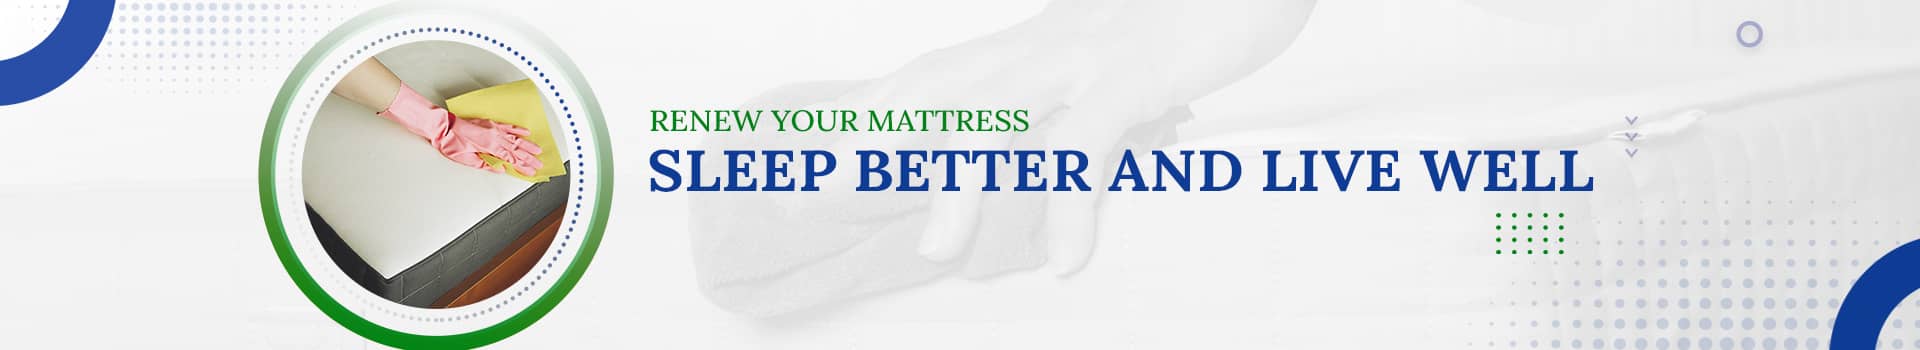 mattress banner